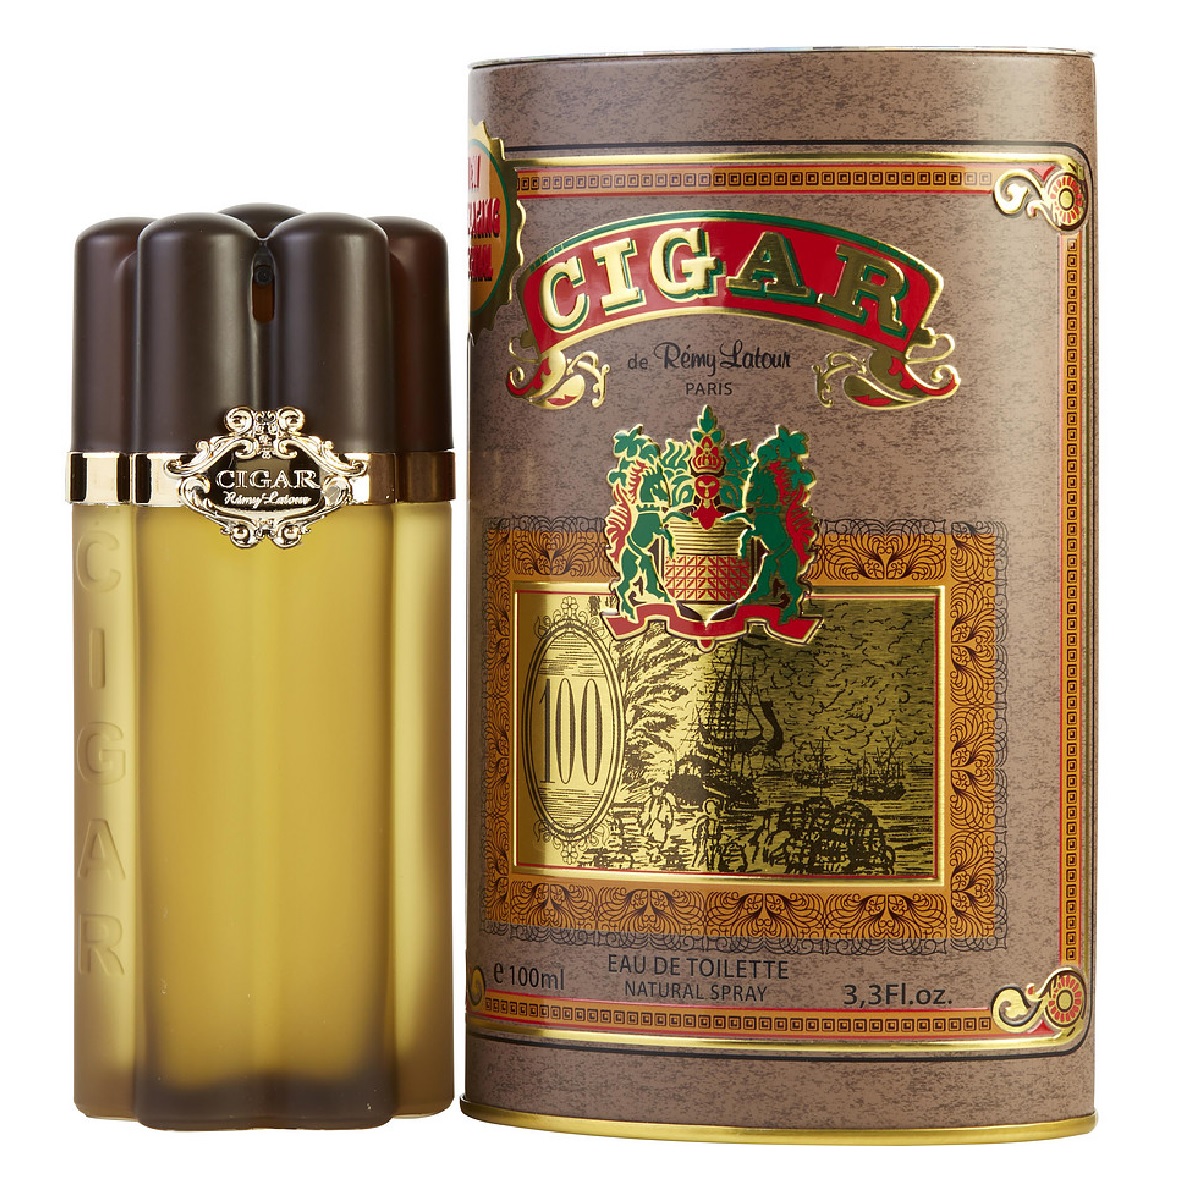 Cigar Caballero Remy Latour 100 ml Edt Spray - Original